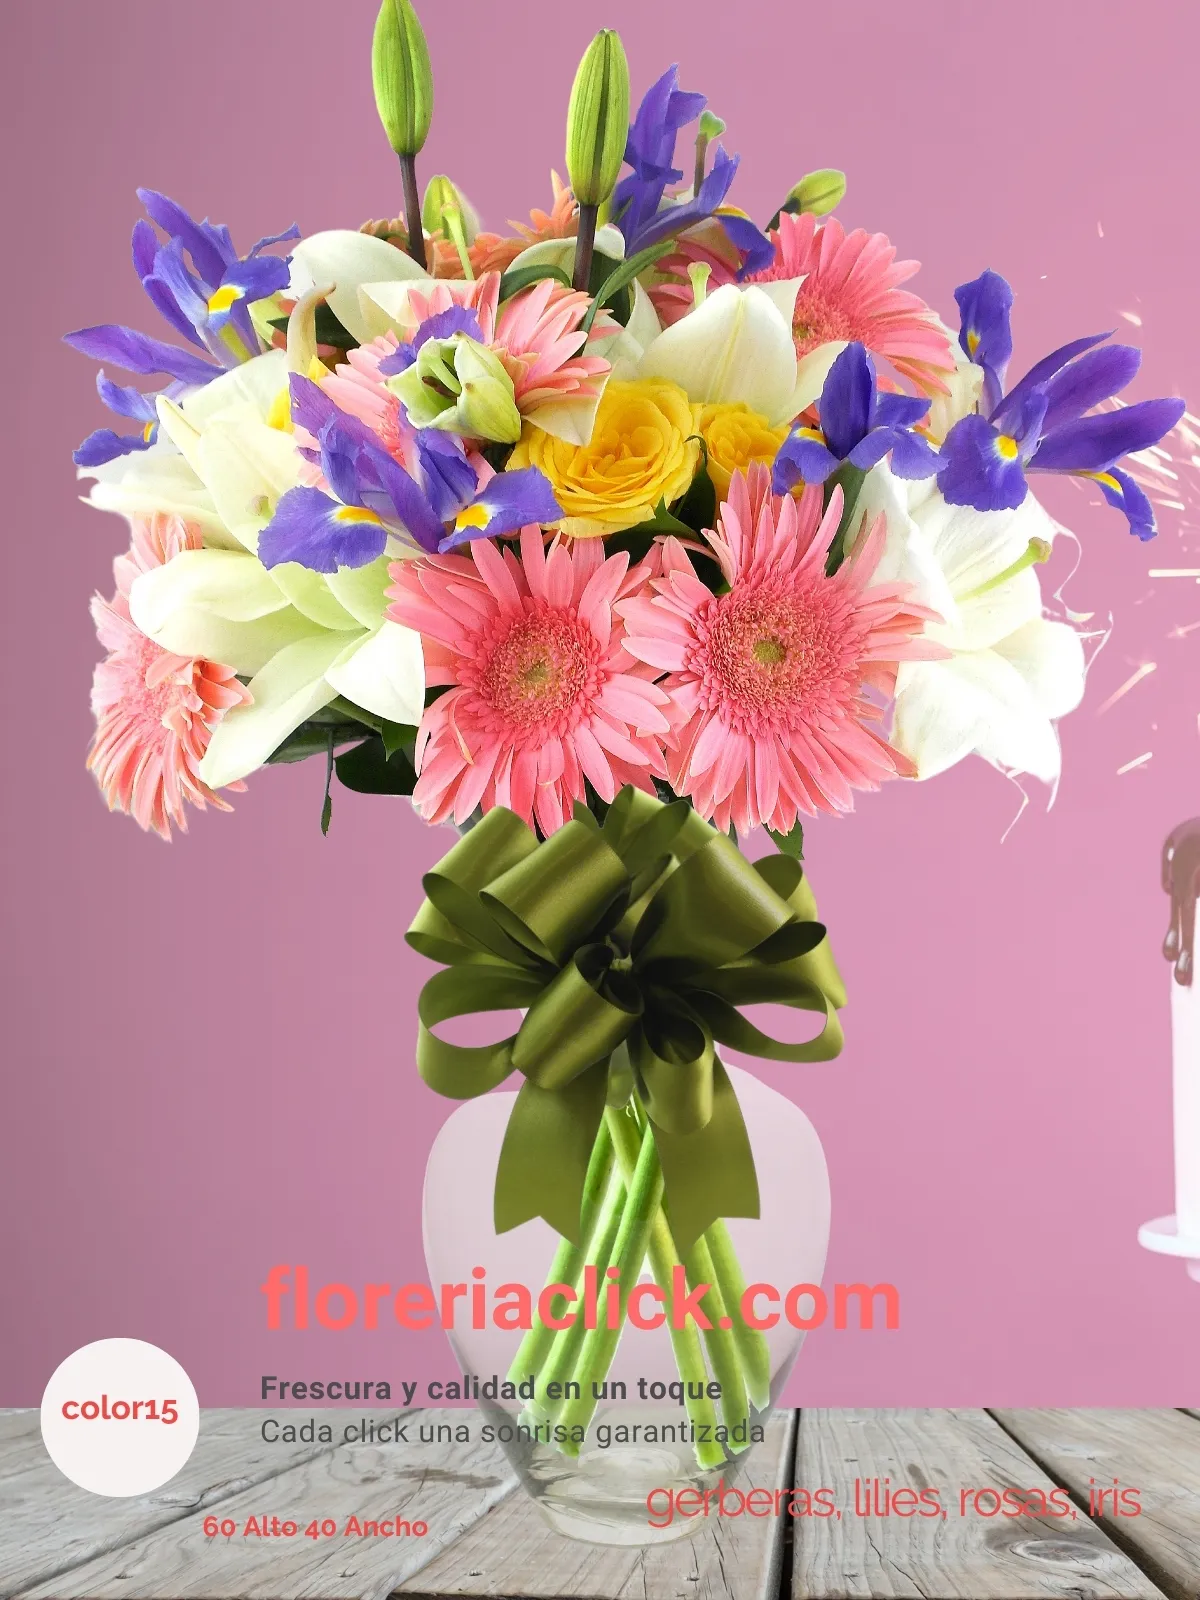 Arreglo floral 43 flores en armonía de colores exquisita